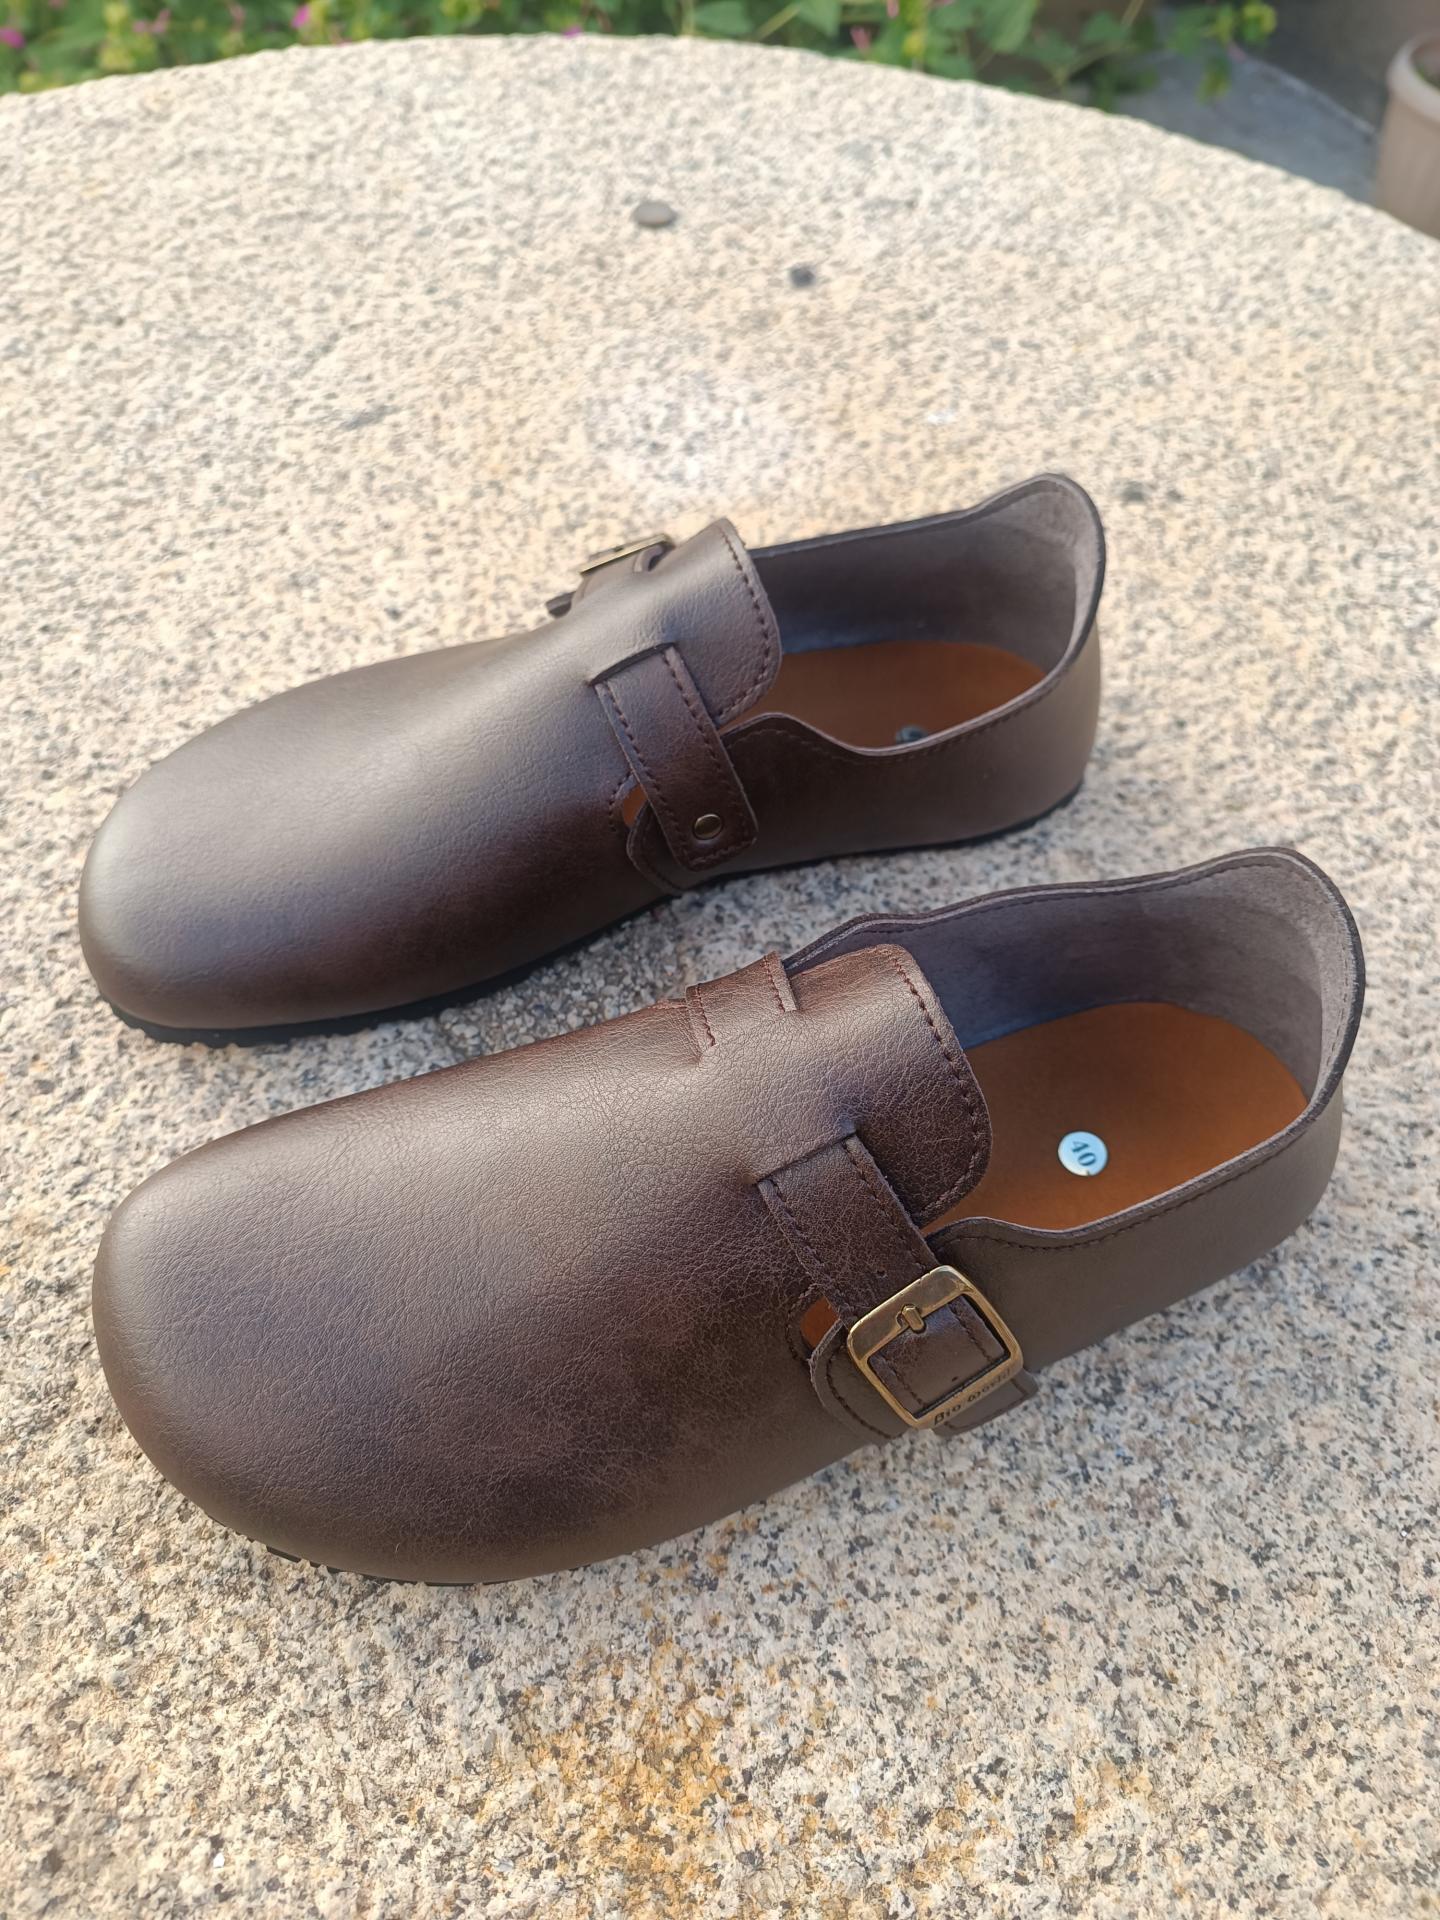 Calzado Barefoot Hombre – Zapatos Respetuosos